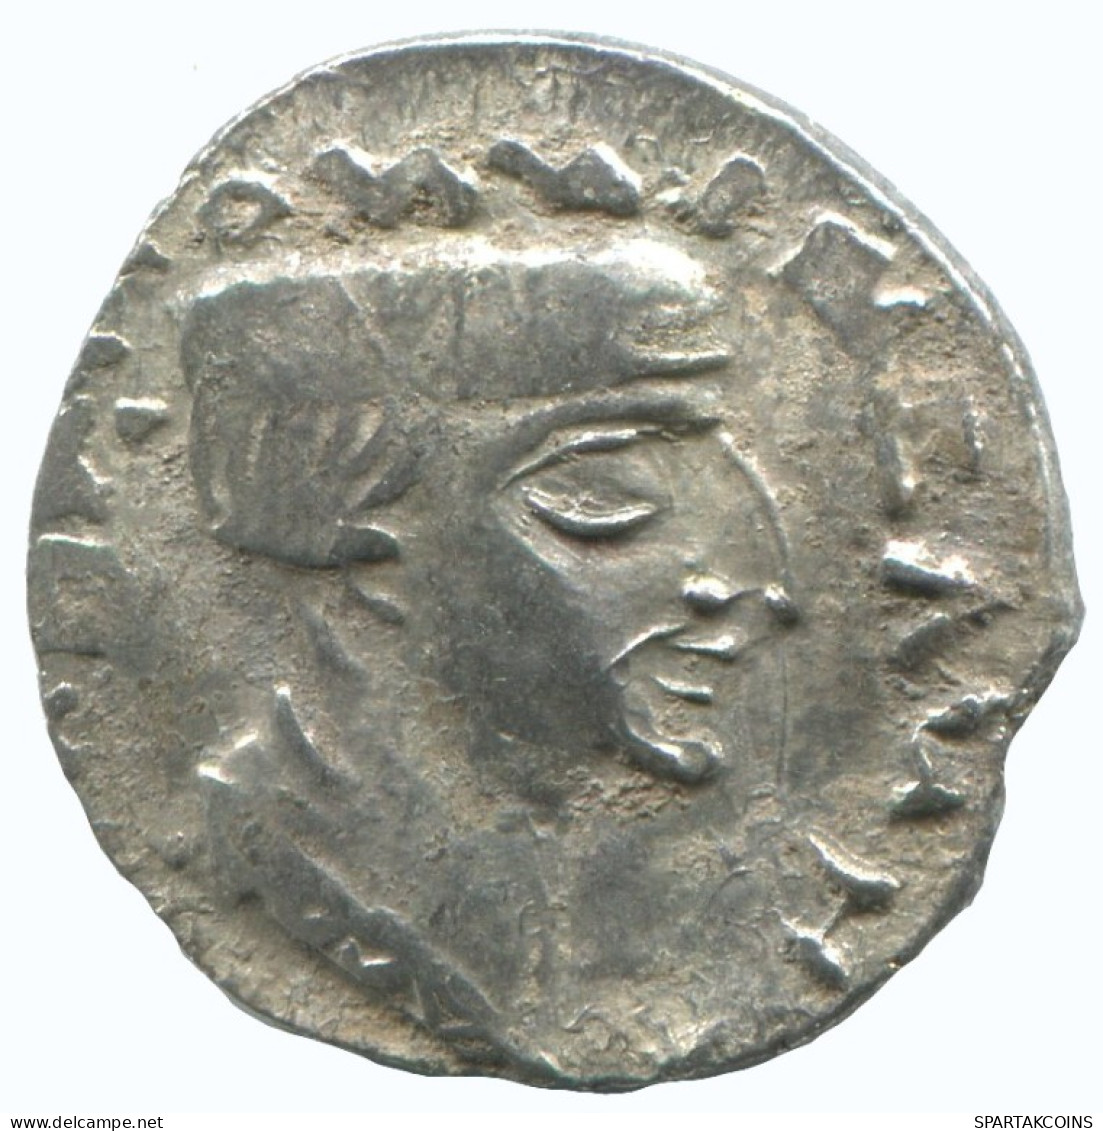 INDO-SKYTHIANS WESTERN KSHATRAPAS KING NAHAPANA AR DRACHM GREEK #AA451.40.U.A - Griechische Münzen